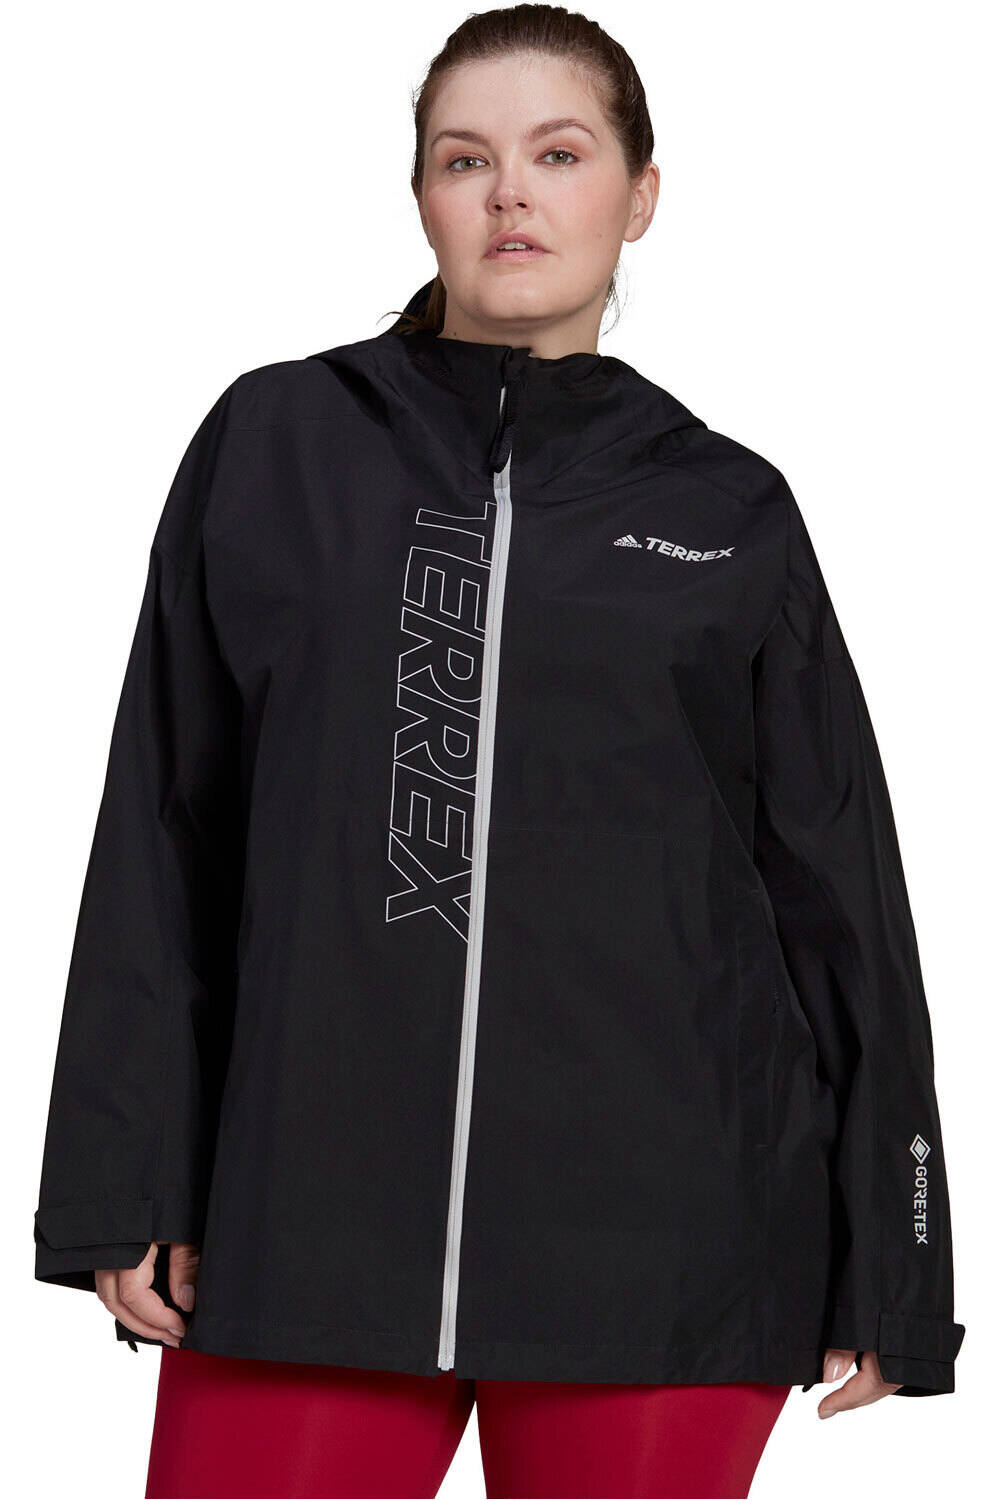 adidas chaqueta impermeable mujer Terrex GORE-TEX Paclite Rain (Tallas grandes) vista frontal